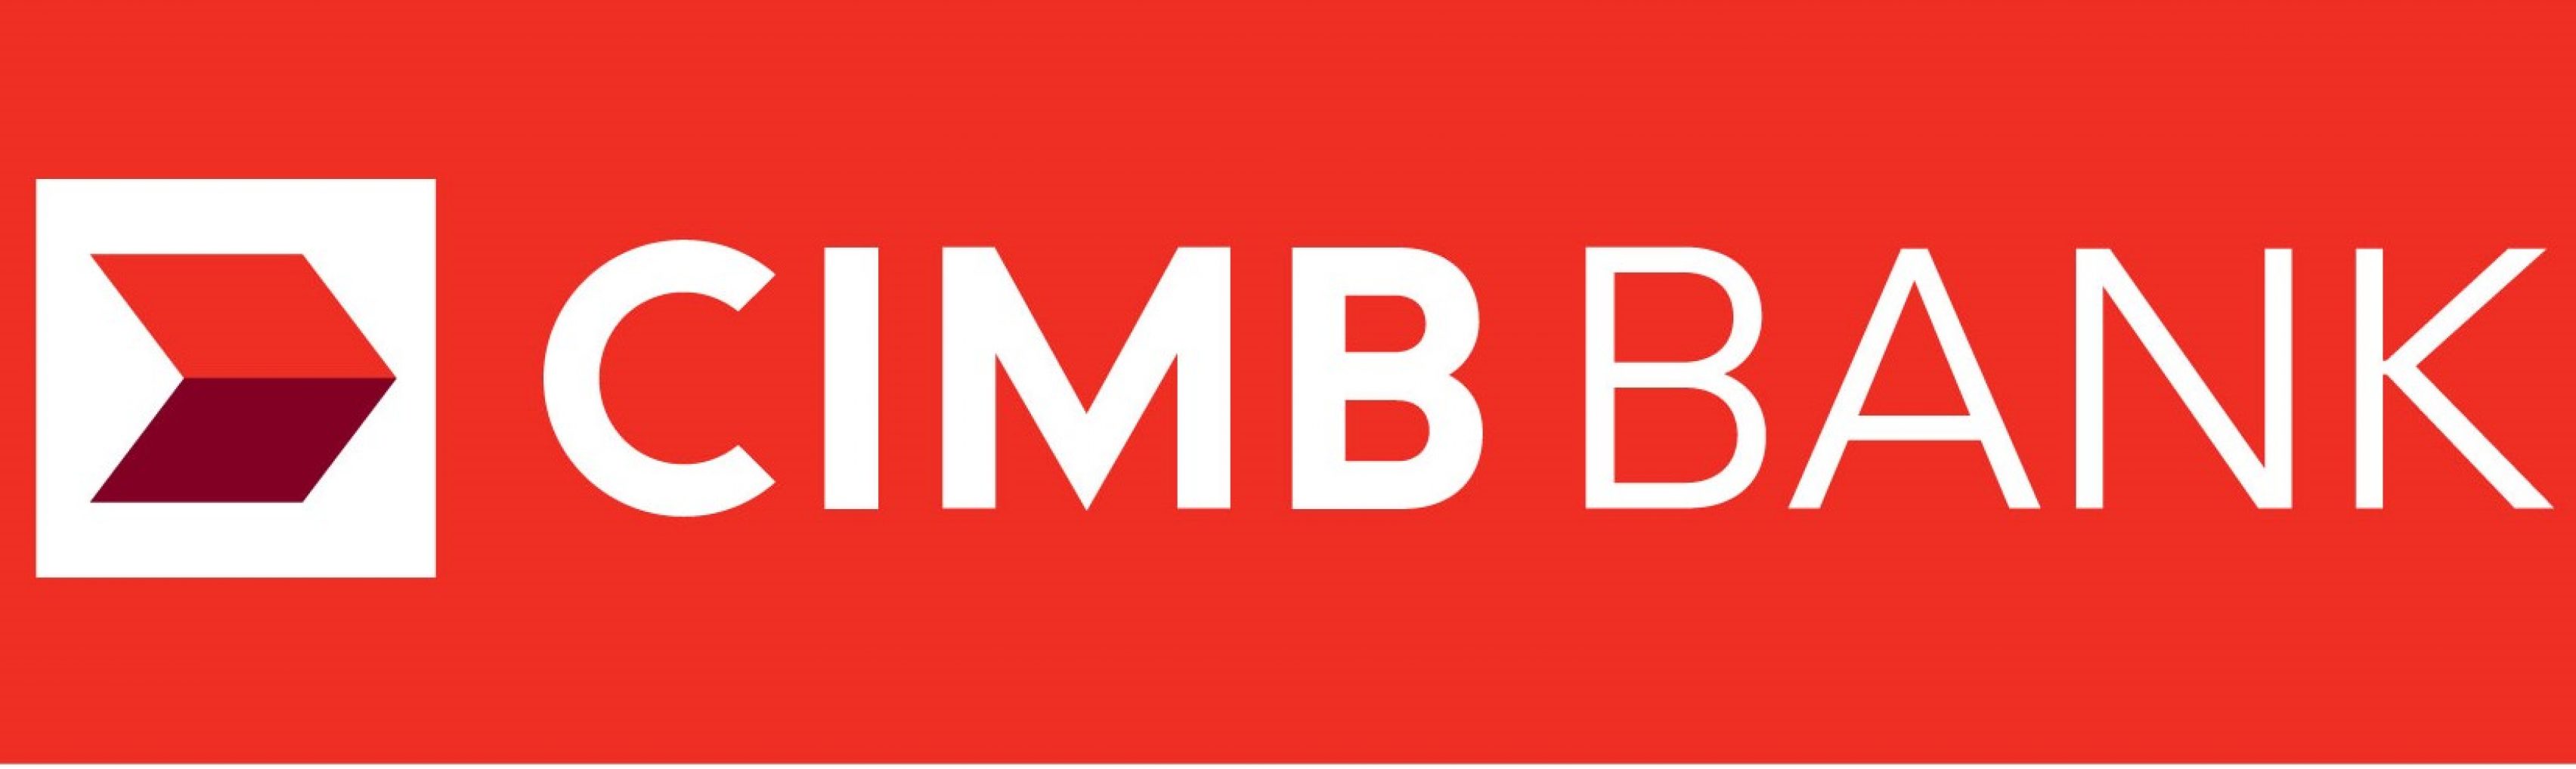 cimb-bank-logo-vector1